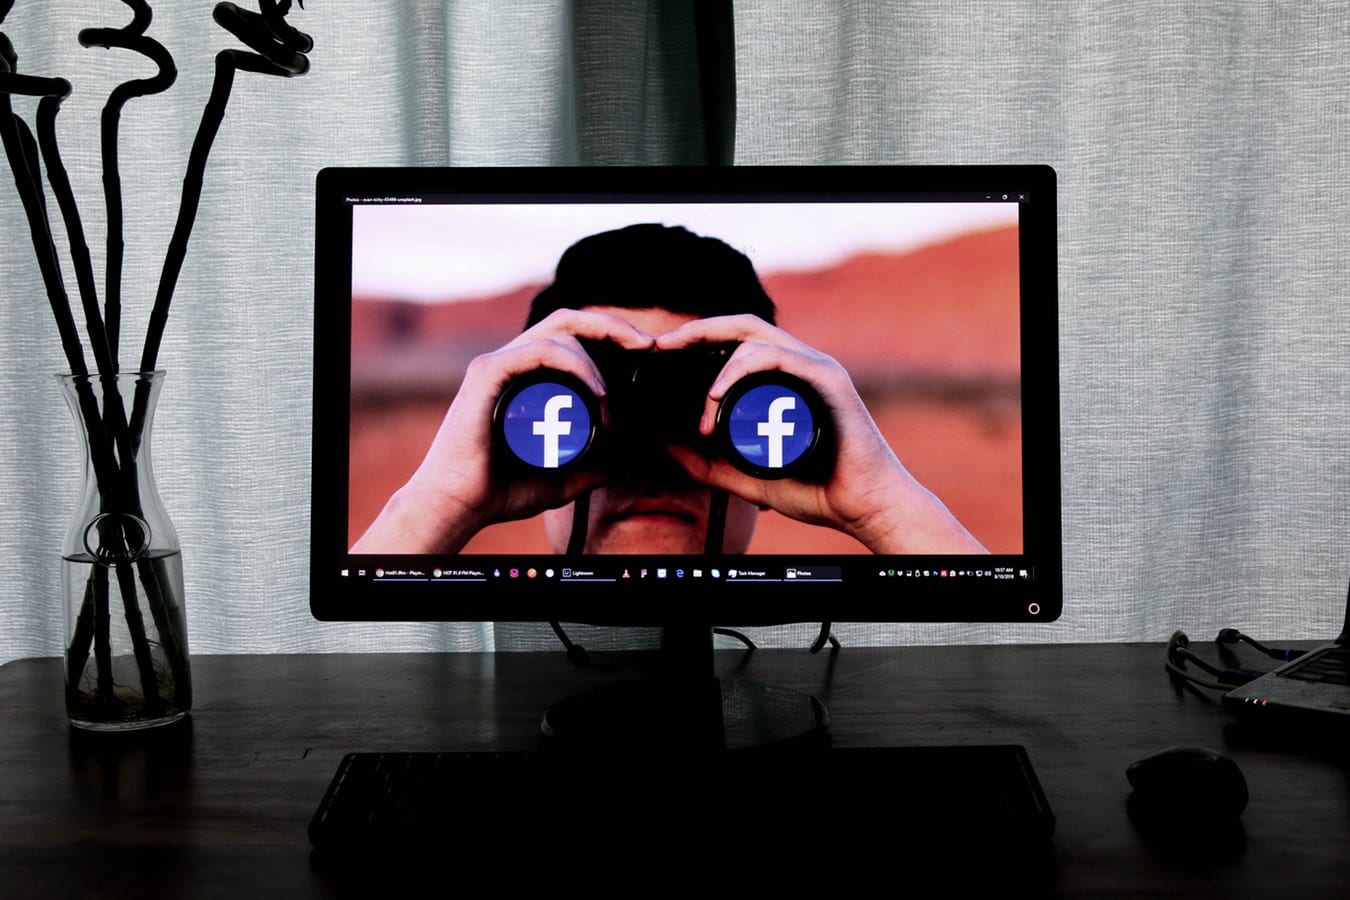 Facebookの友達が写真を見るのを防ぐ方法